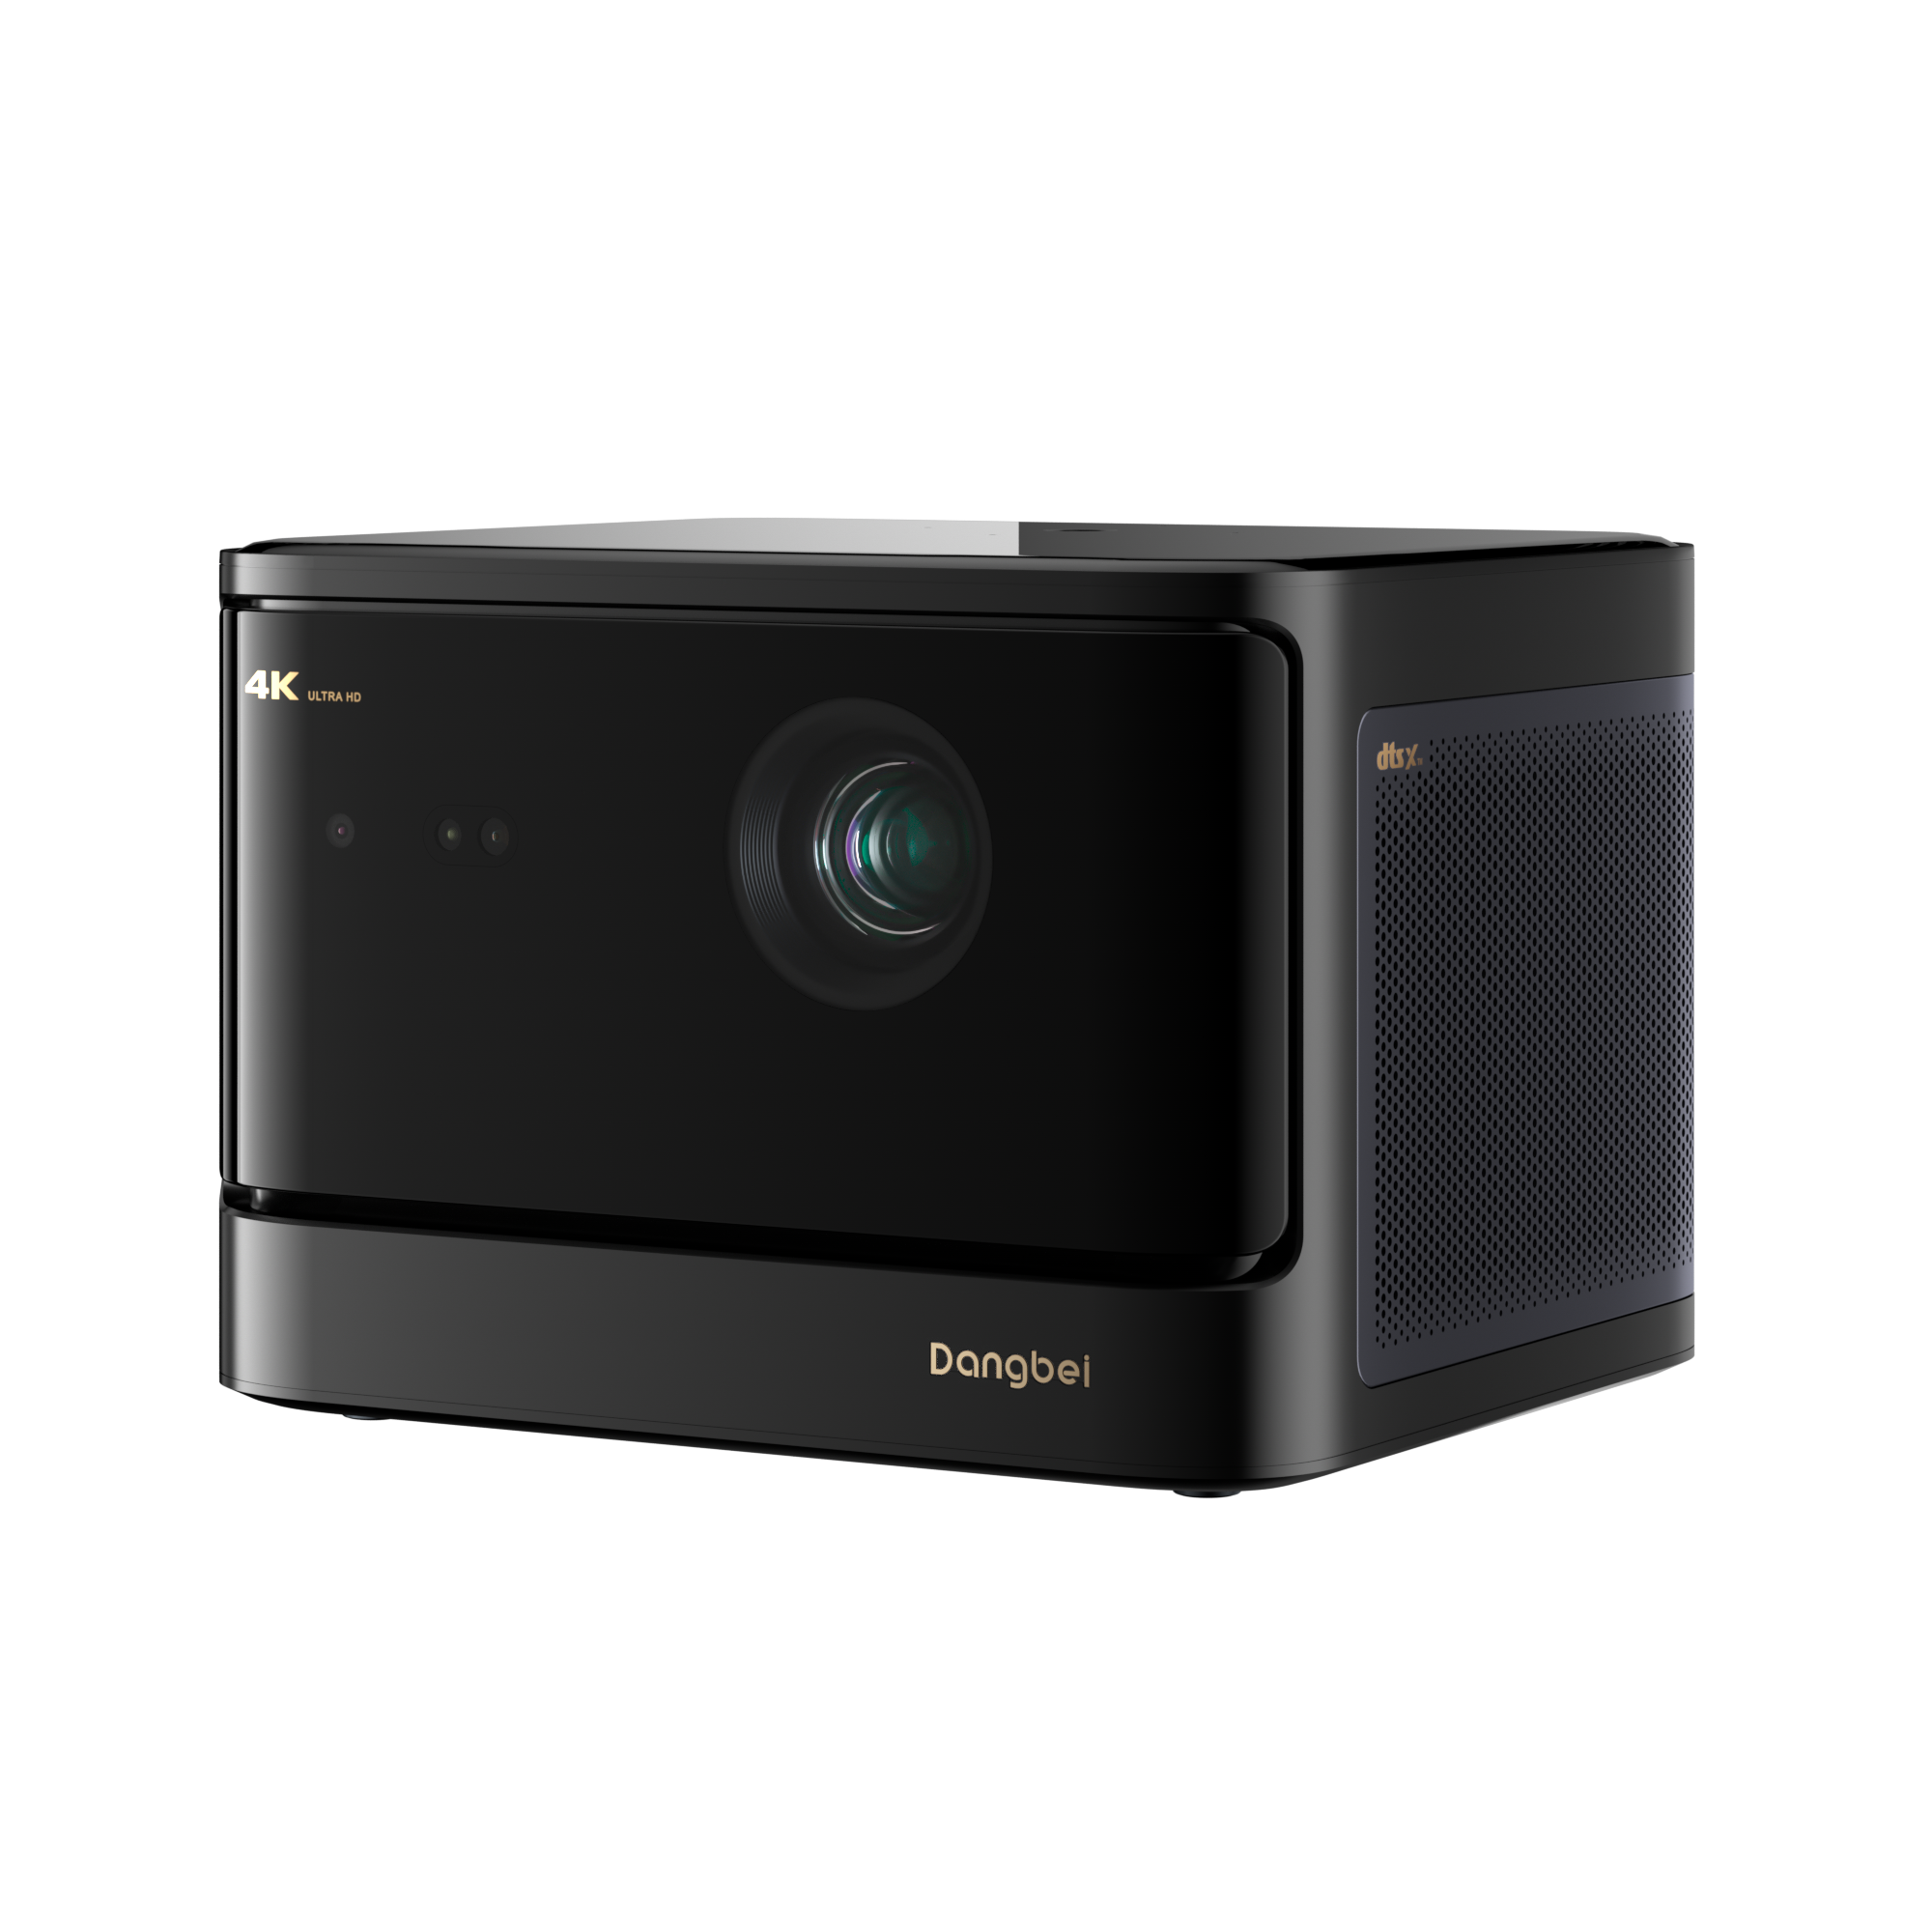 【高亮激光4K新品升级】当贝X5 Pro激光投影仪家用超高清高亮智能激光电视投影机低蓝光客厅卧室家庭影院